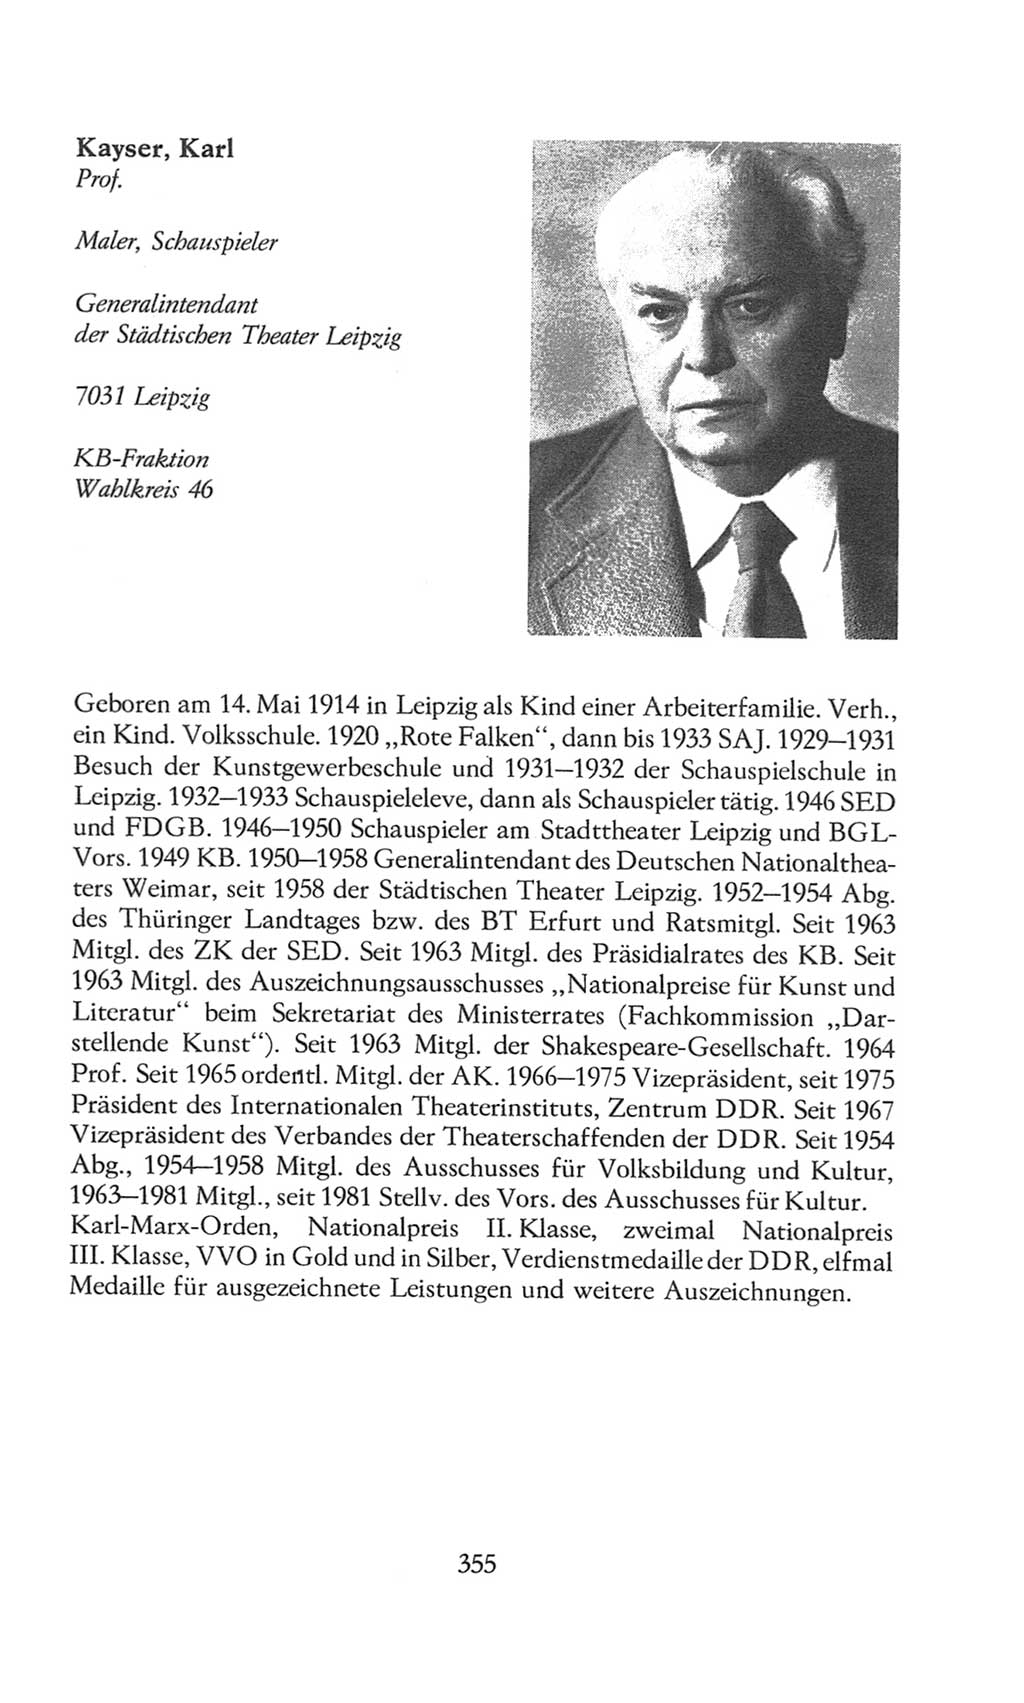 Volkskammer (VK) der Deutschen Demokratischen Republik (DDR), 8. Wahlperiode 1981-1986, Seite 355 (VK. DDR 8. WP. 1981-1986, S. 355)